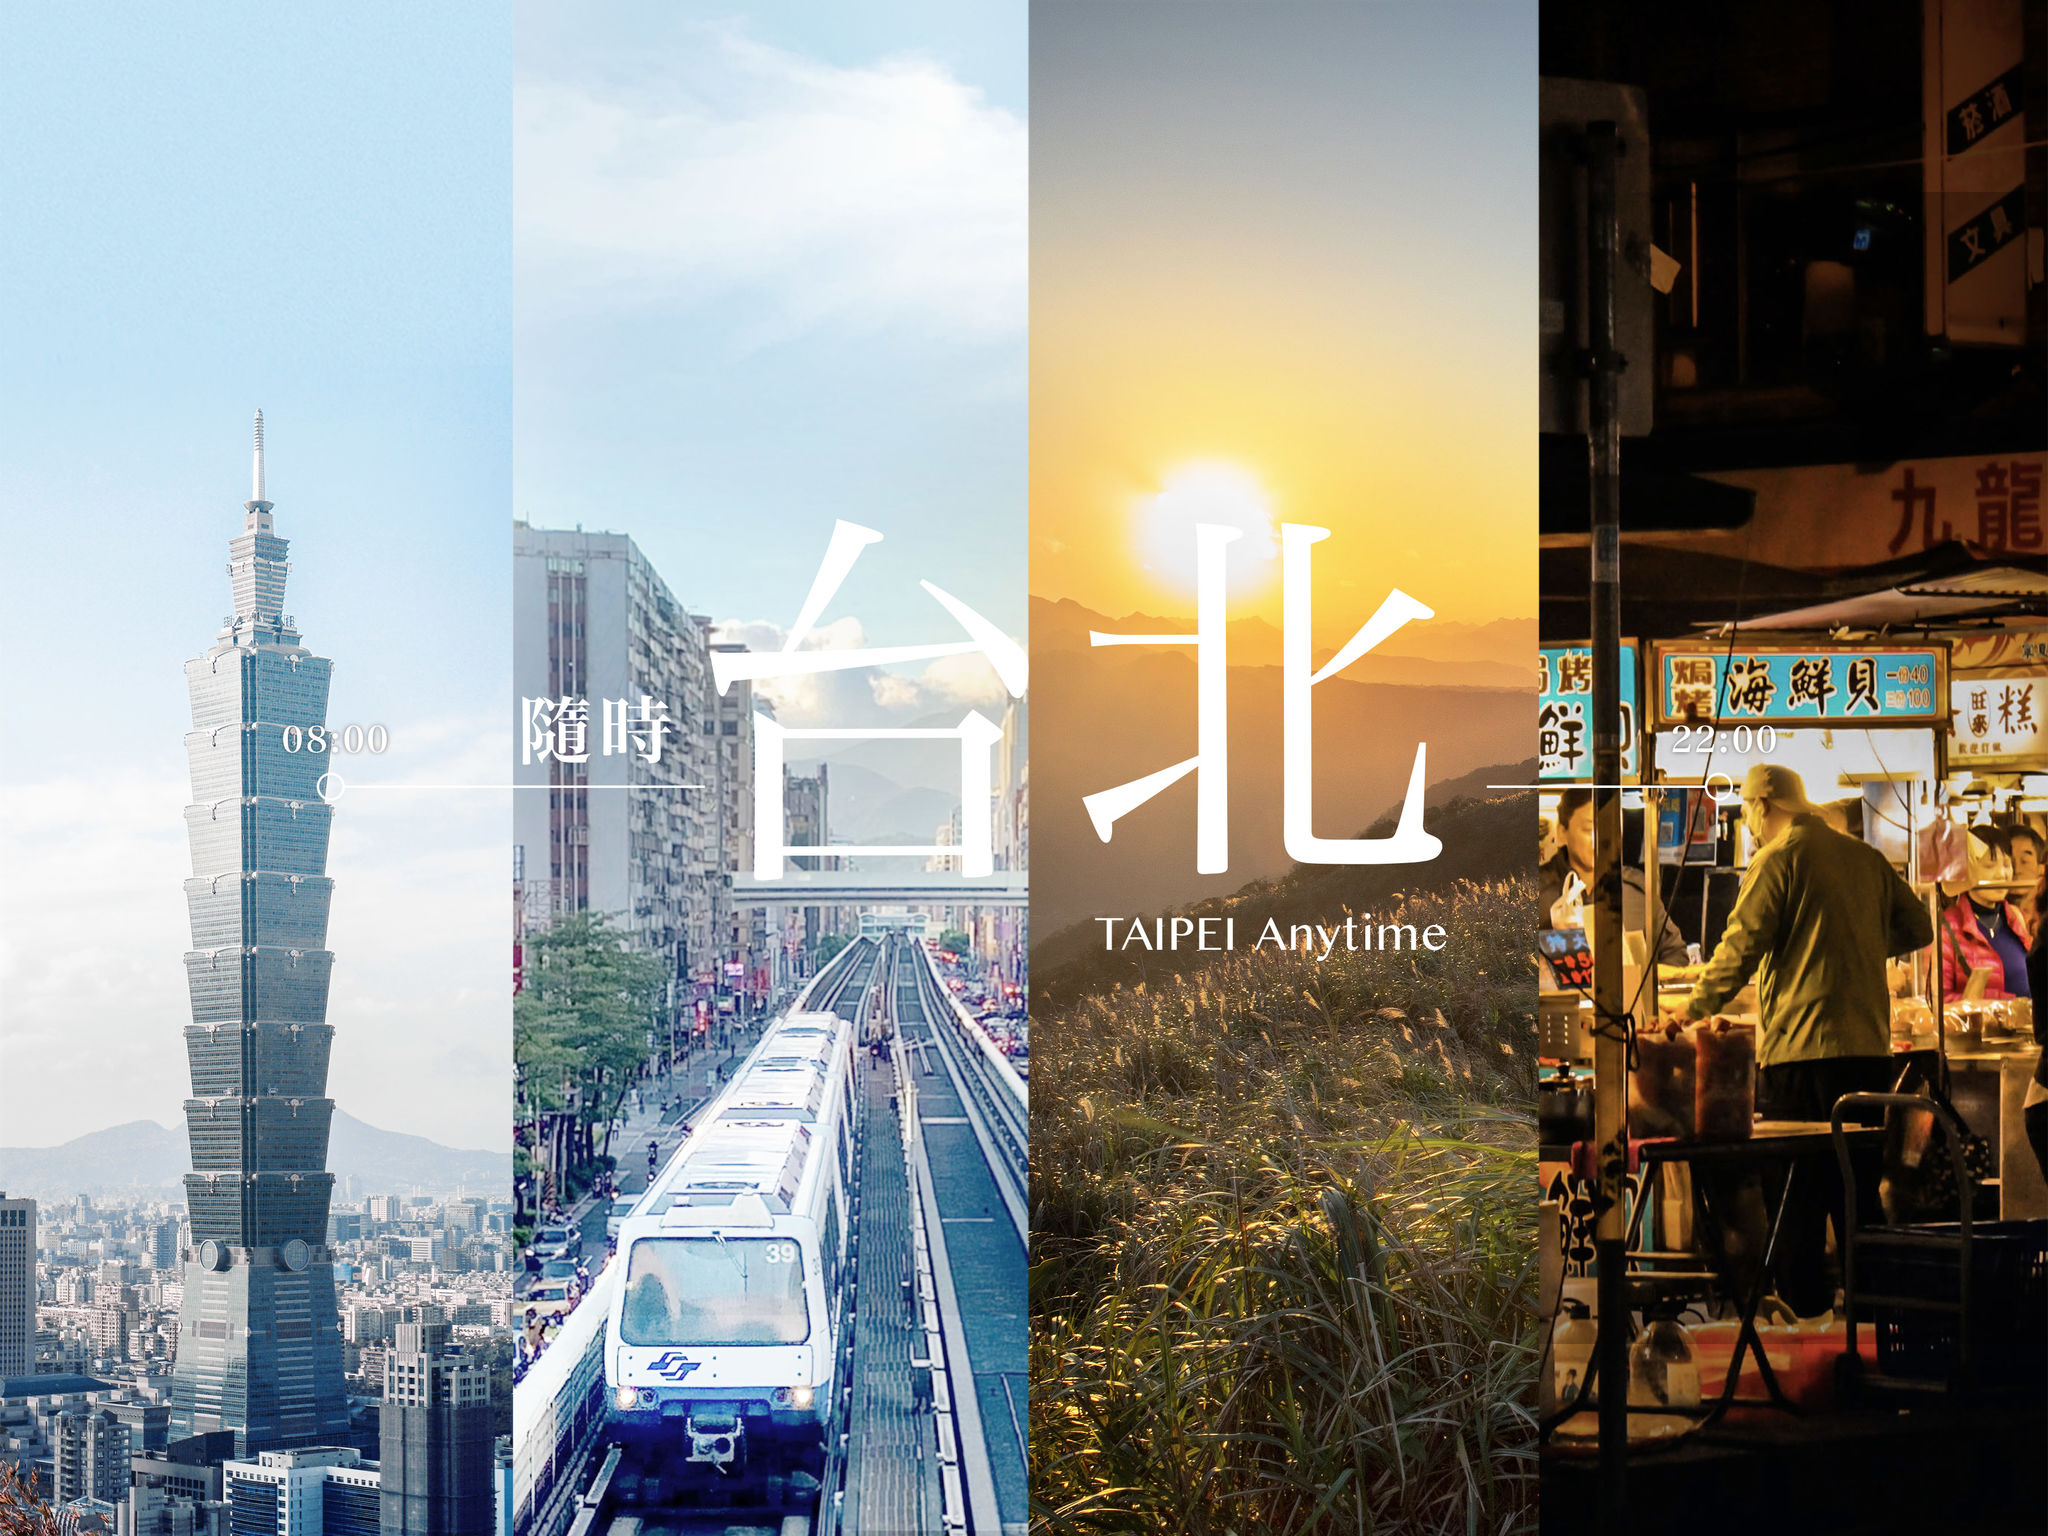 Taipei Metro Travel Pass: Taipei Anytime